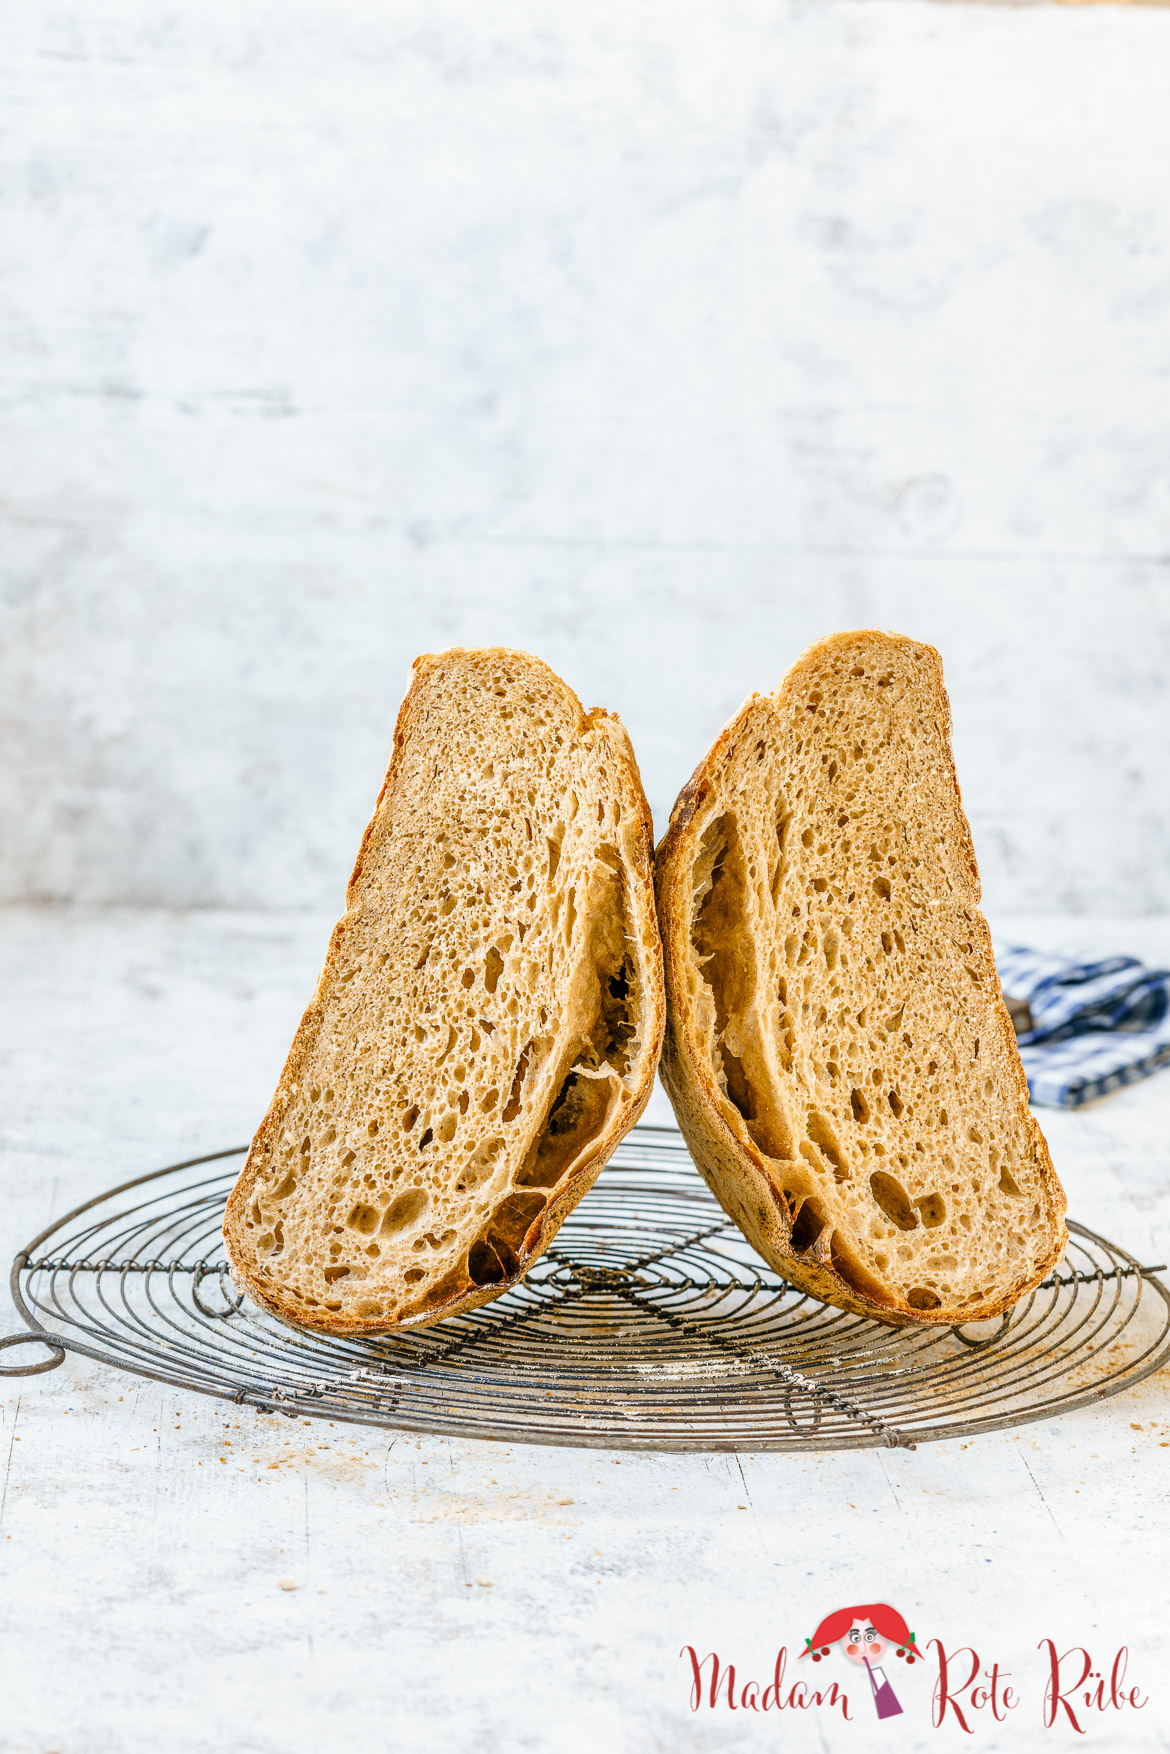 Madam Rote Rübe - Solothurner Brot mit fast 50% Weizenvollkorn-Anteil